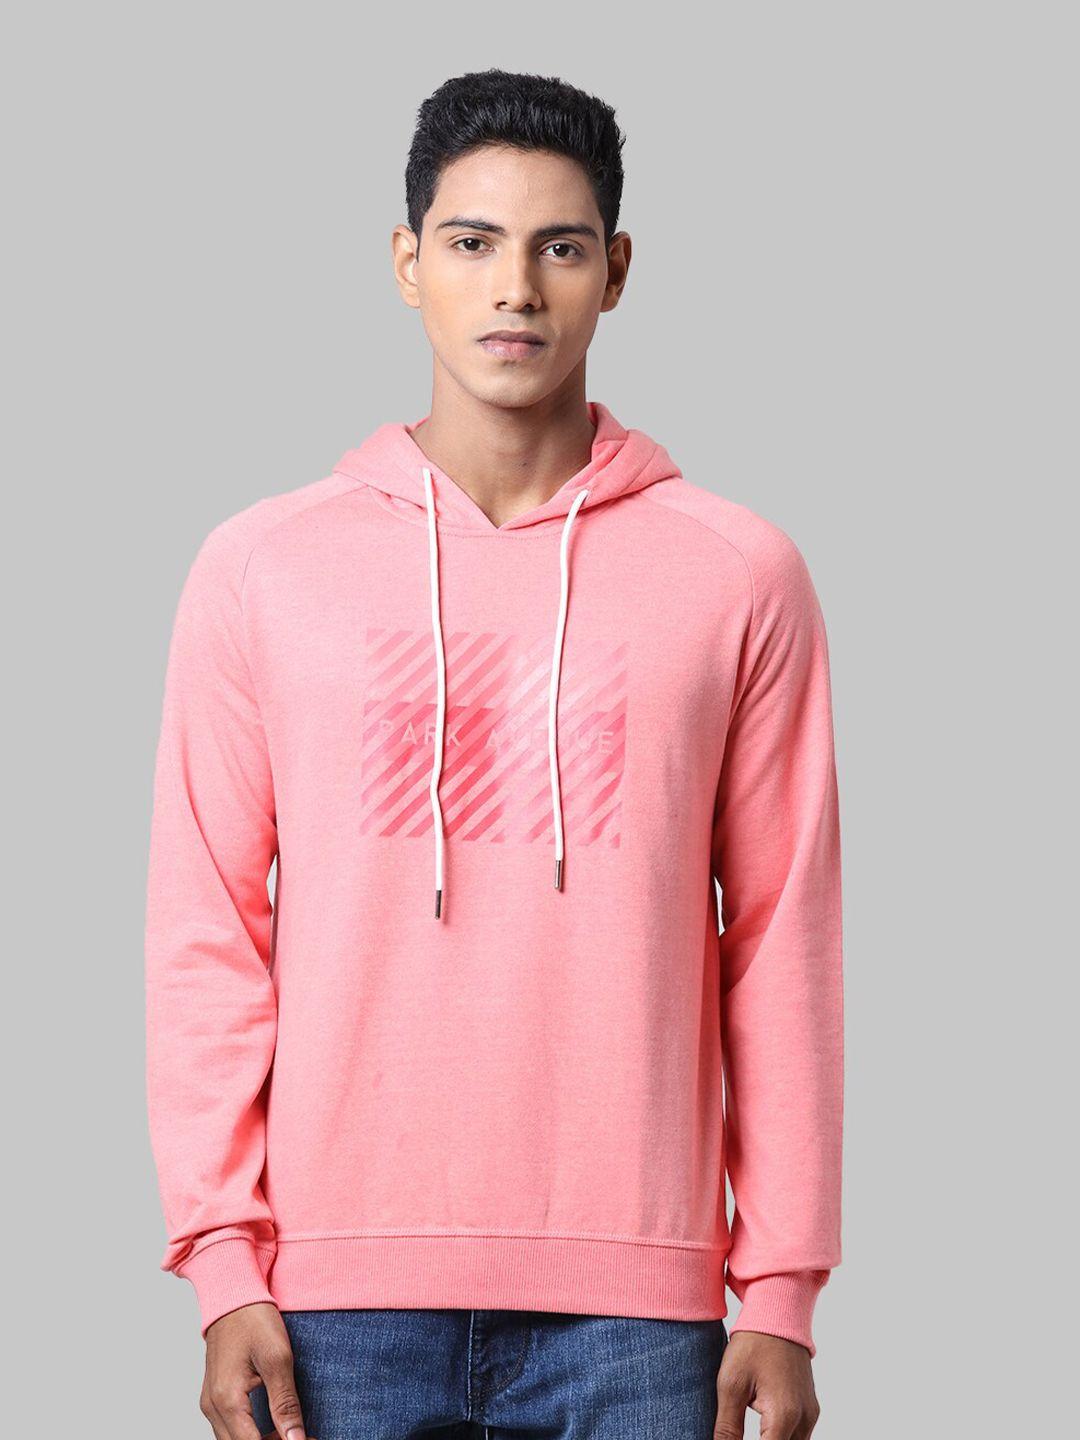 park-avenue-men-pink-printed-hooded-sweatshirt